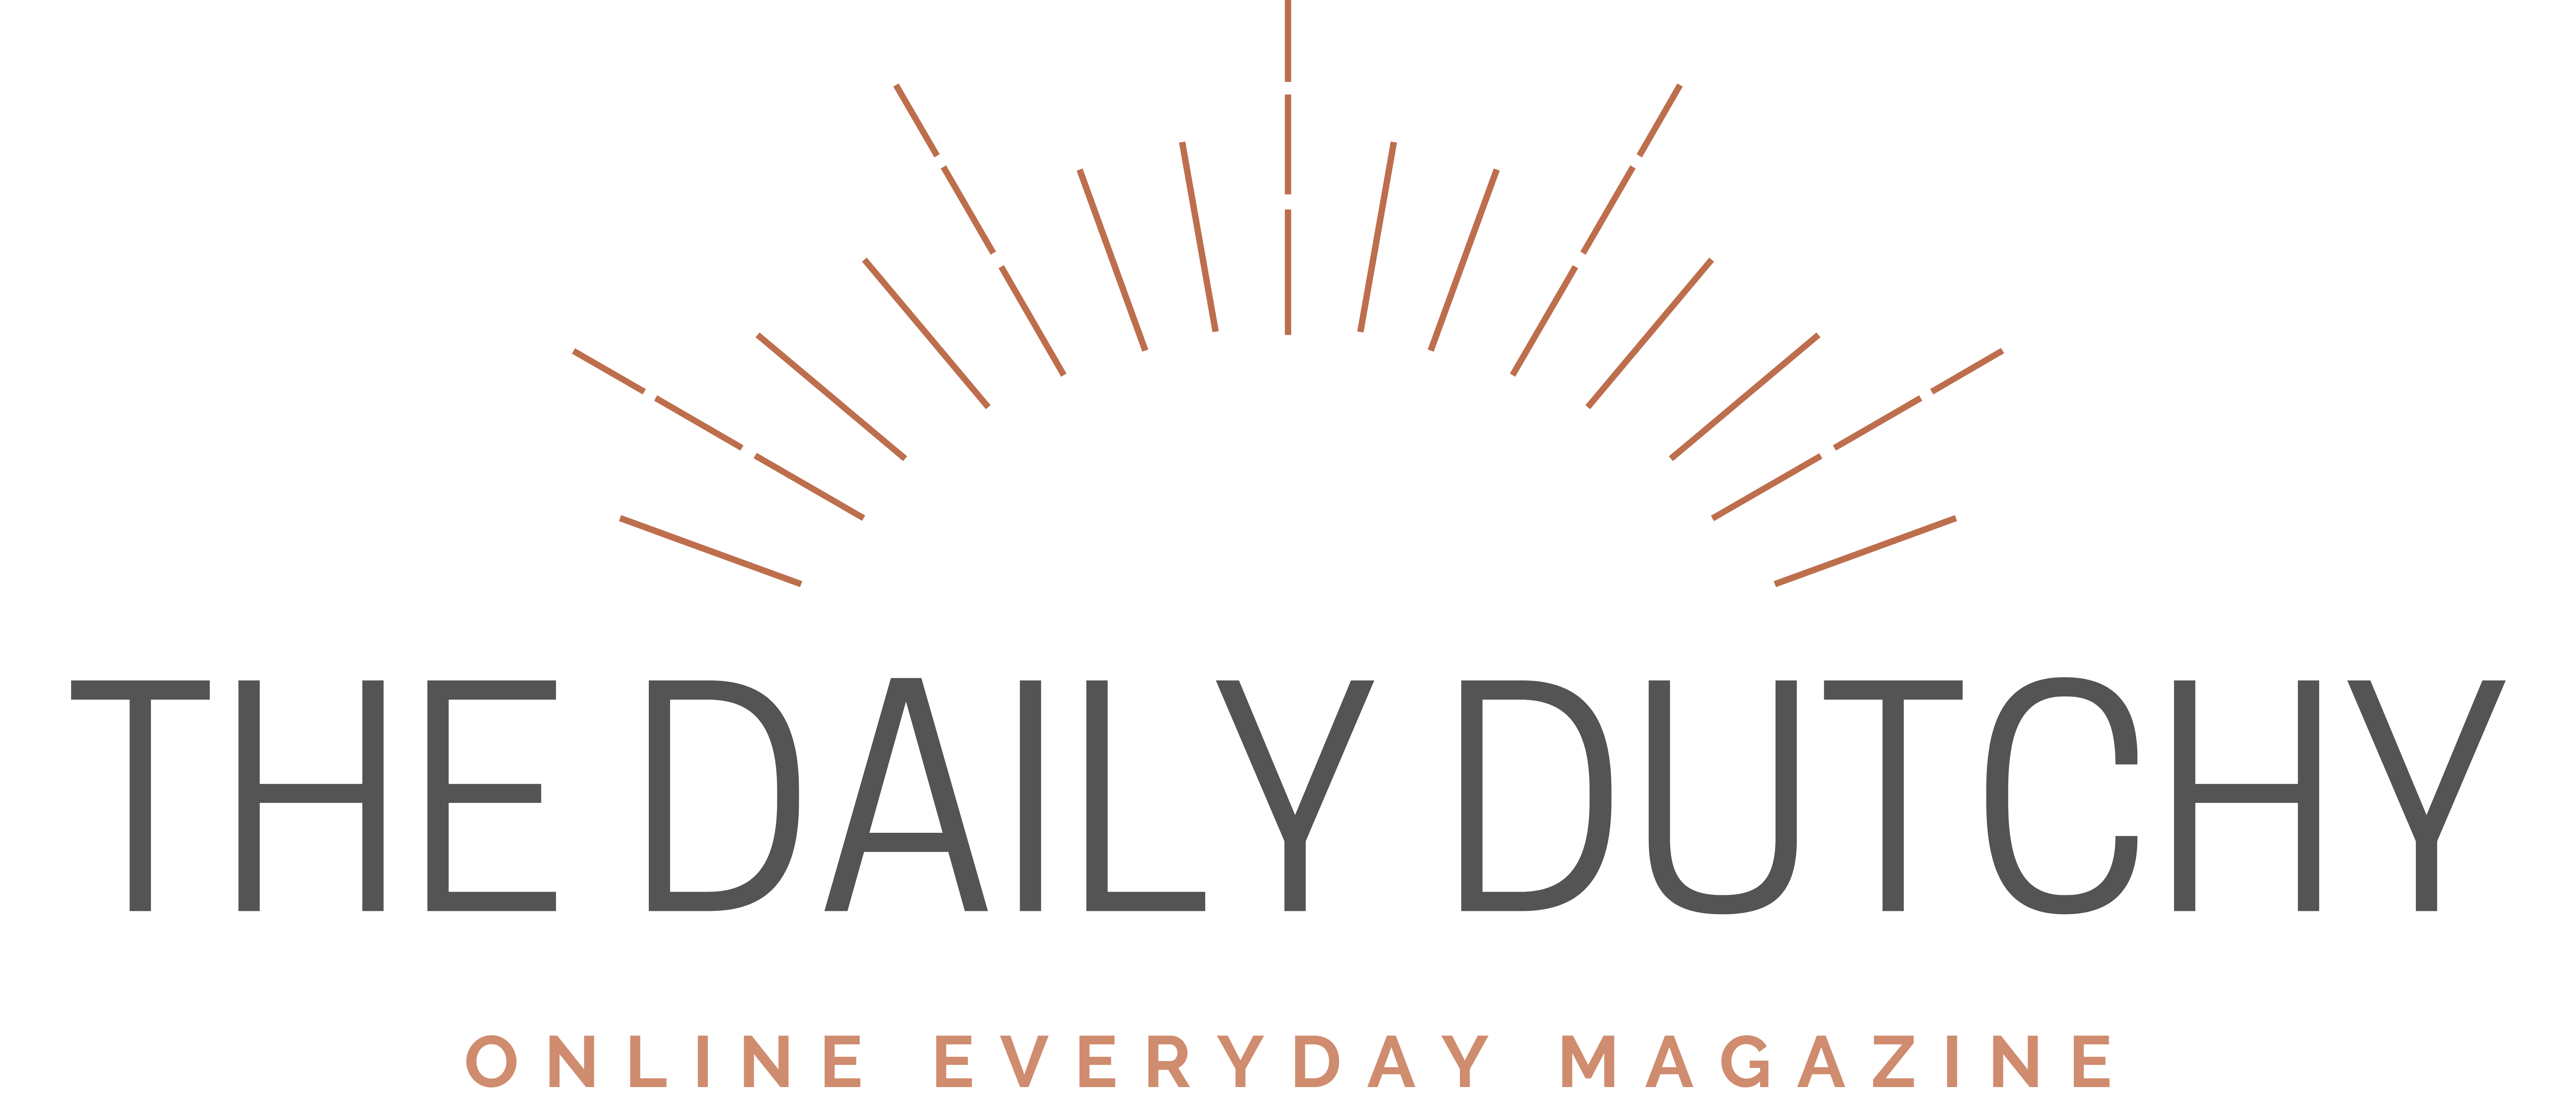 The Daily Dutchy